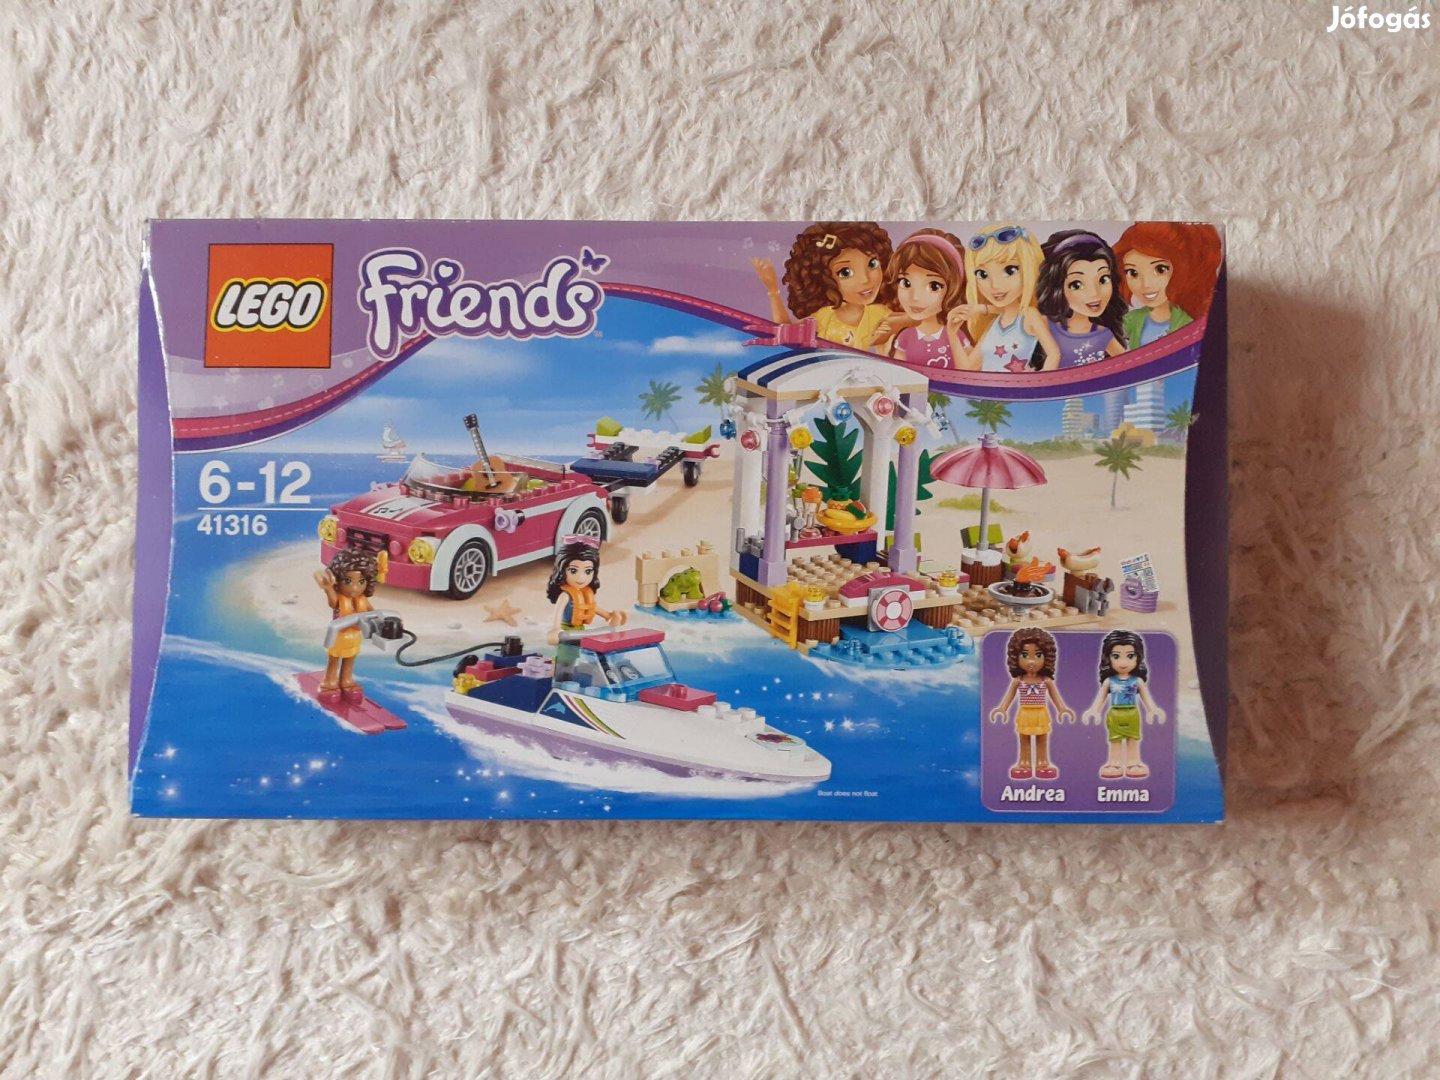 LEGO Friends Andrea versenymotorcsónak szállítója eladó